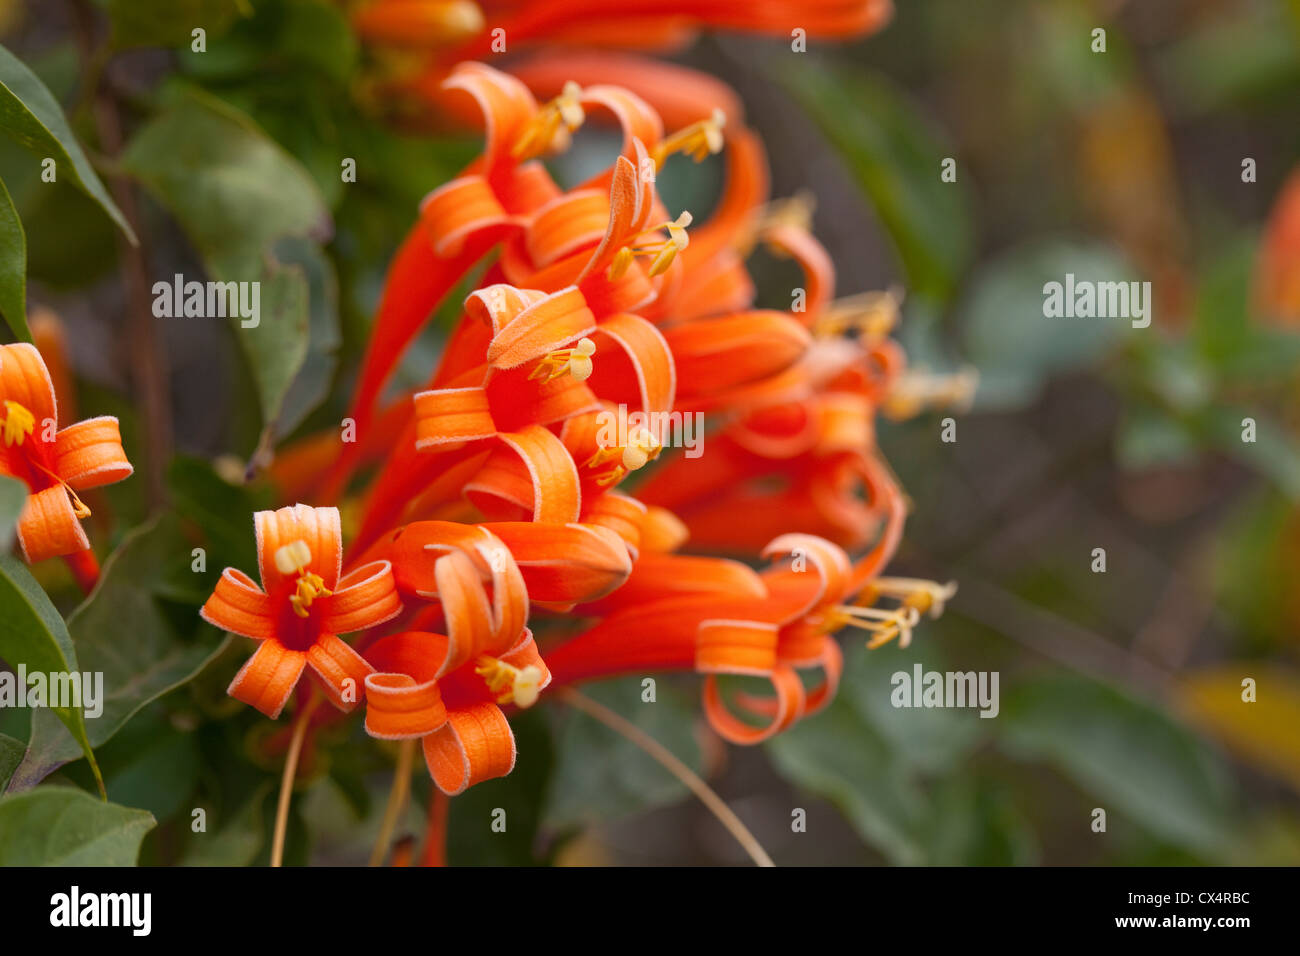 Nahaufnahme der Blüten der Flamme Ranke (Pyrostegia Venusta) ähnlich gewellt Bänder im Garten in San Jose, Costa Rica. Stockfoto